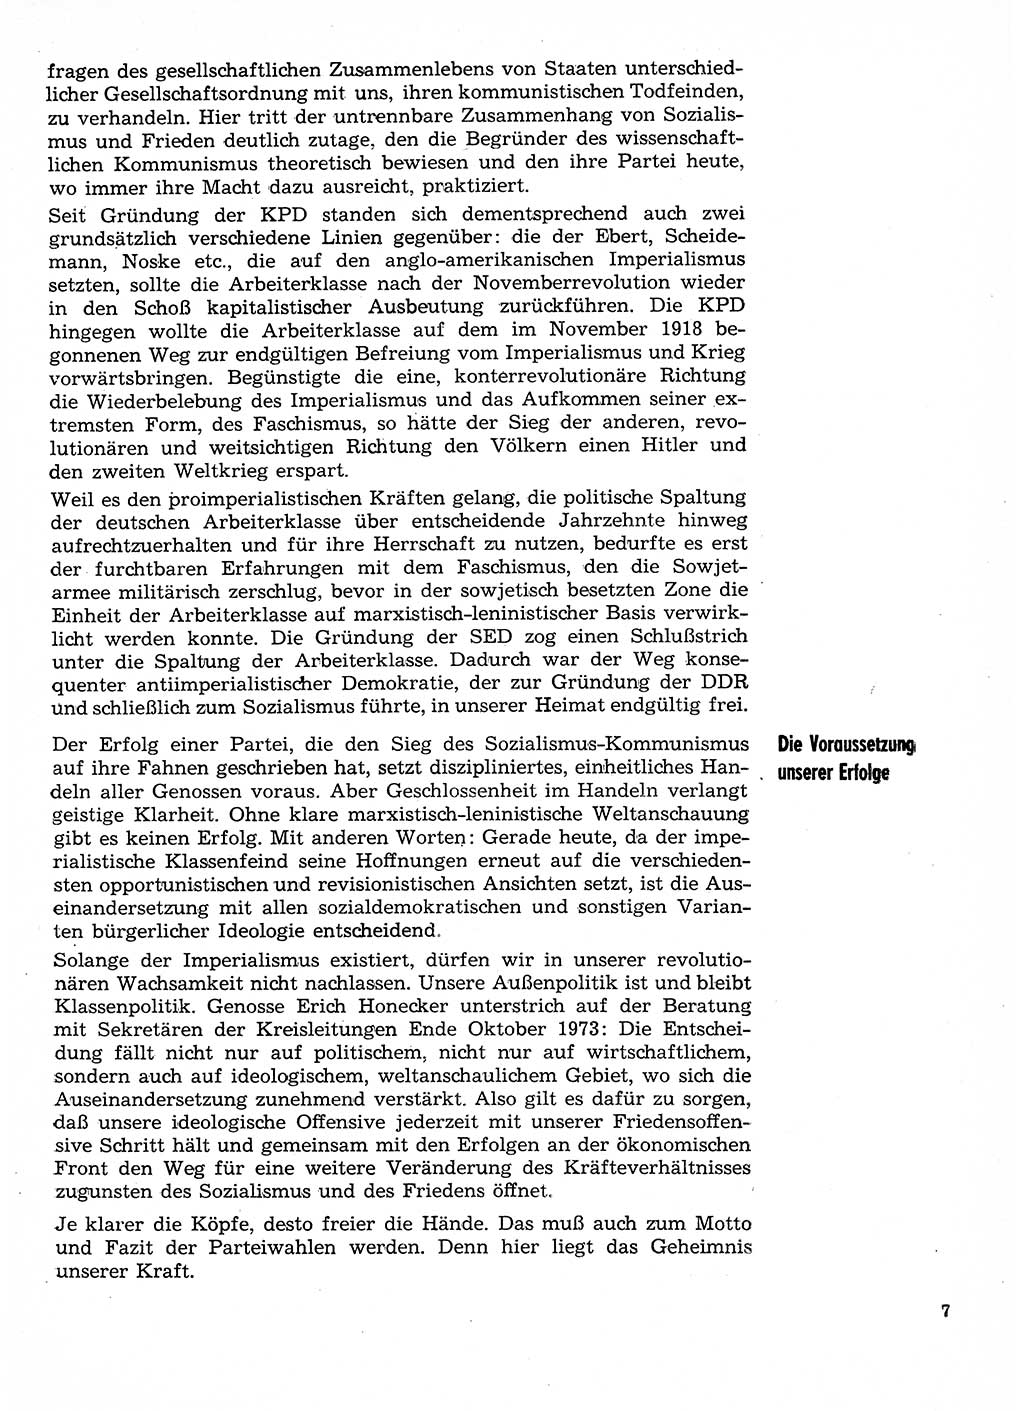 Neuer Weg (NW), Organ des Zentralkomitees (ZK) der SED (Sozialistische Einheitspartei Deutschlands) für Fragen des Parteilebens, 29. Jahrgang [Deutsche Demokratische Republik (DDR)] 1974, Seite 7 (NW ZK SED DDR 1974, S. 7)